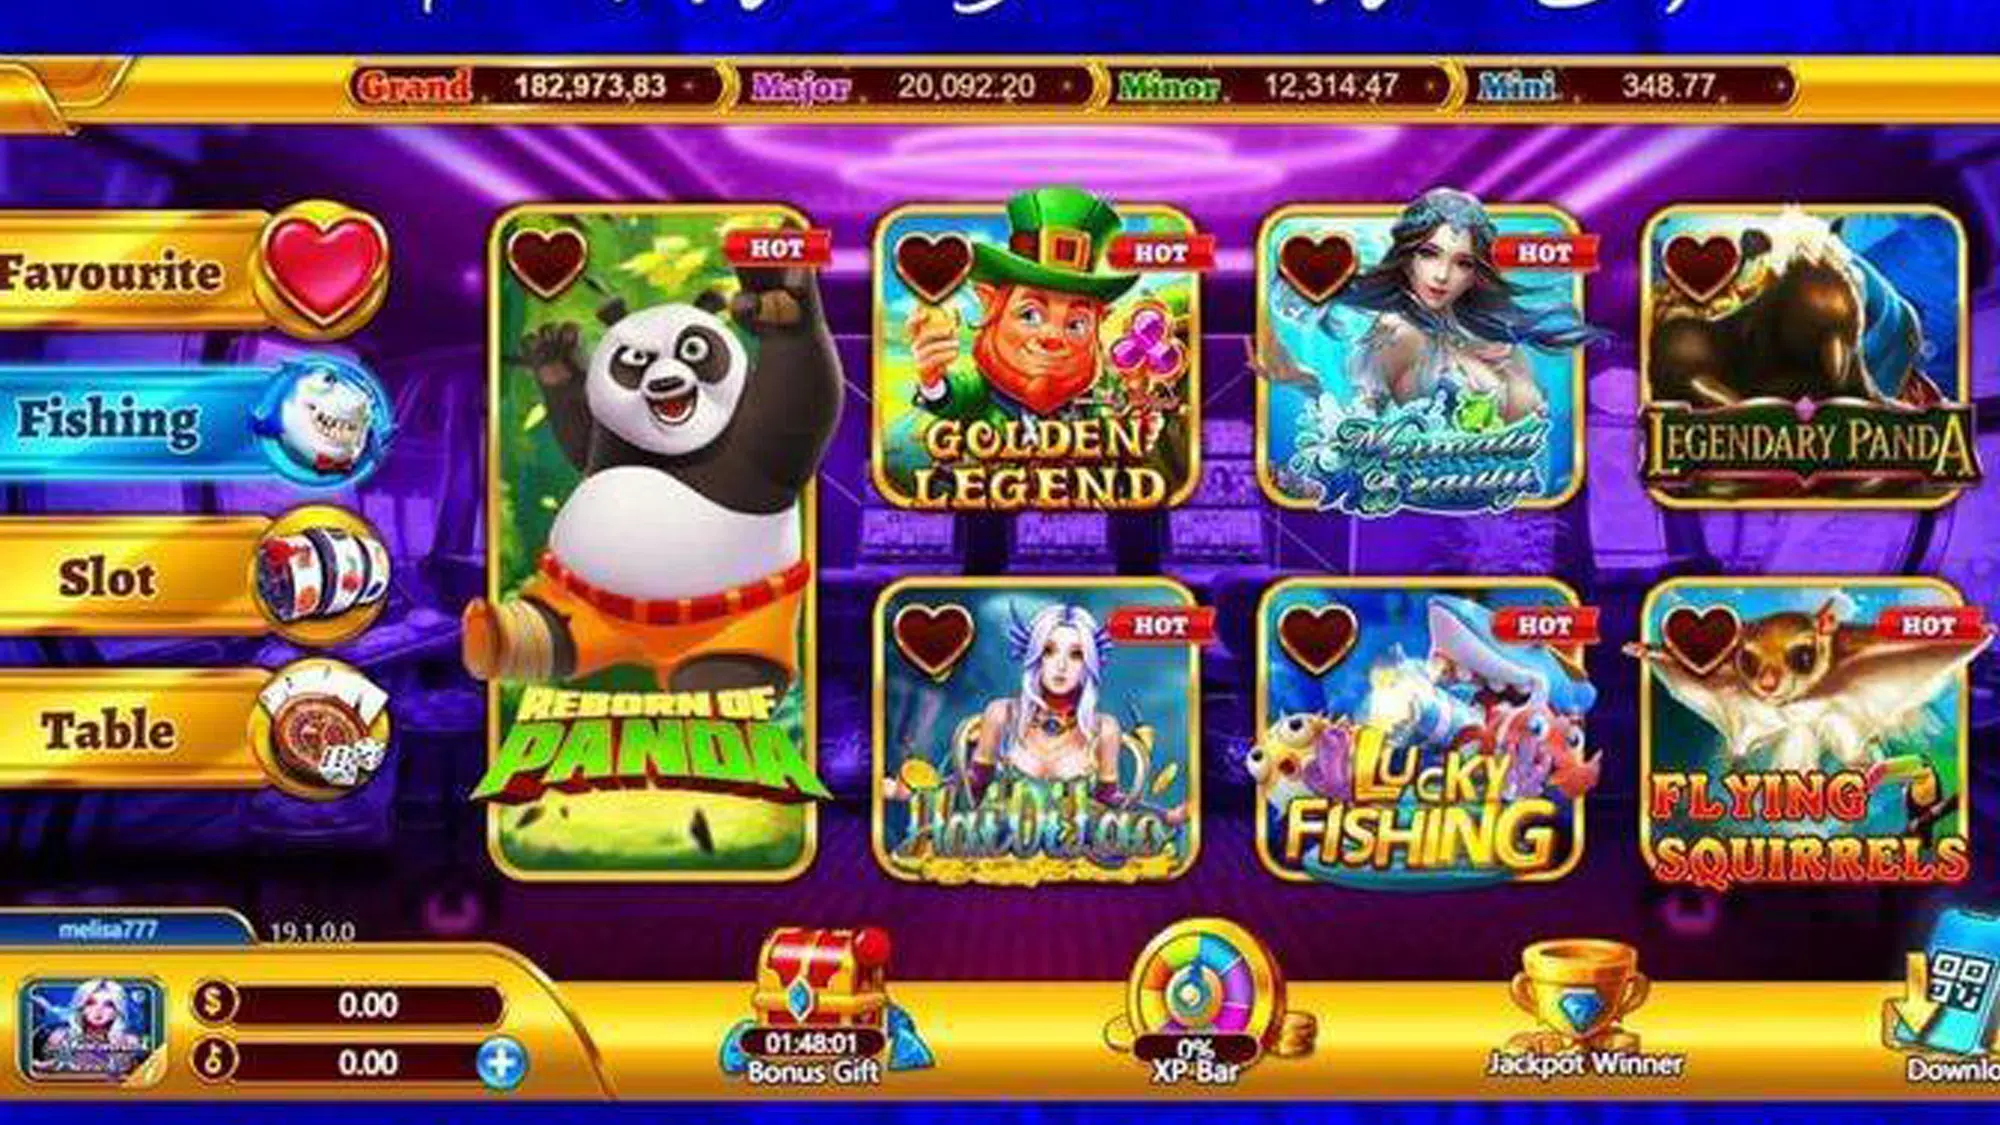 Ultra-Panda for Mobile guia Screenshot1